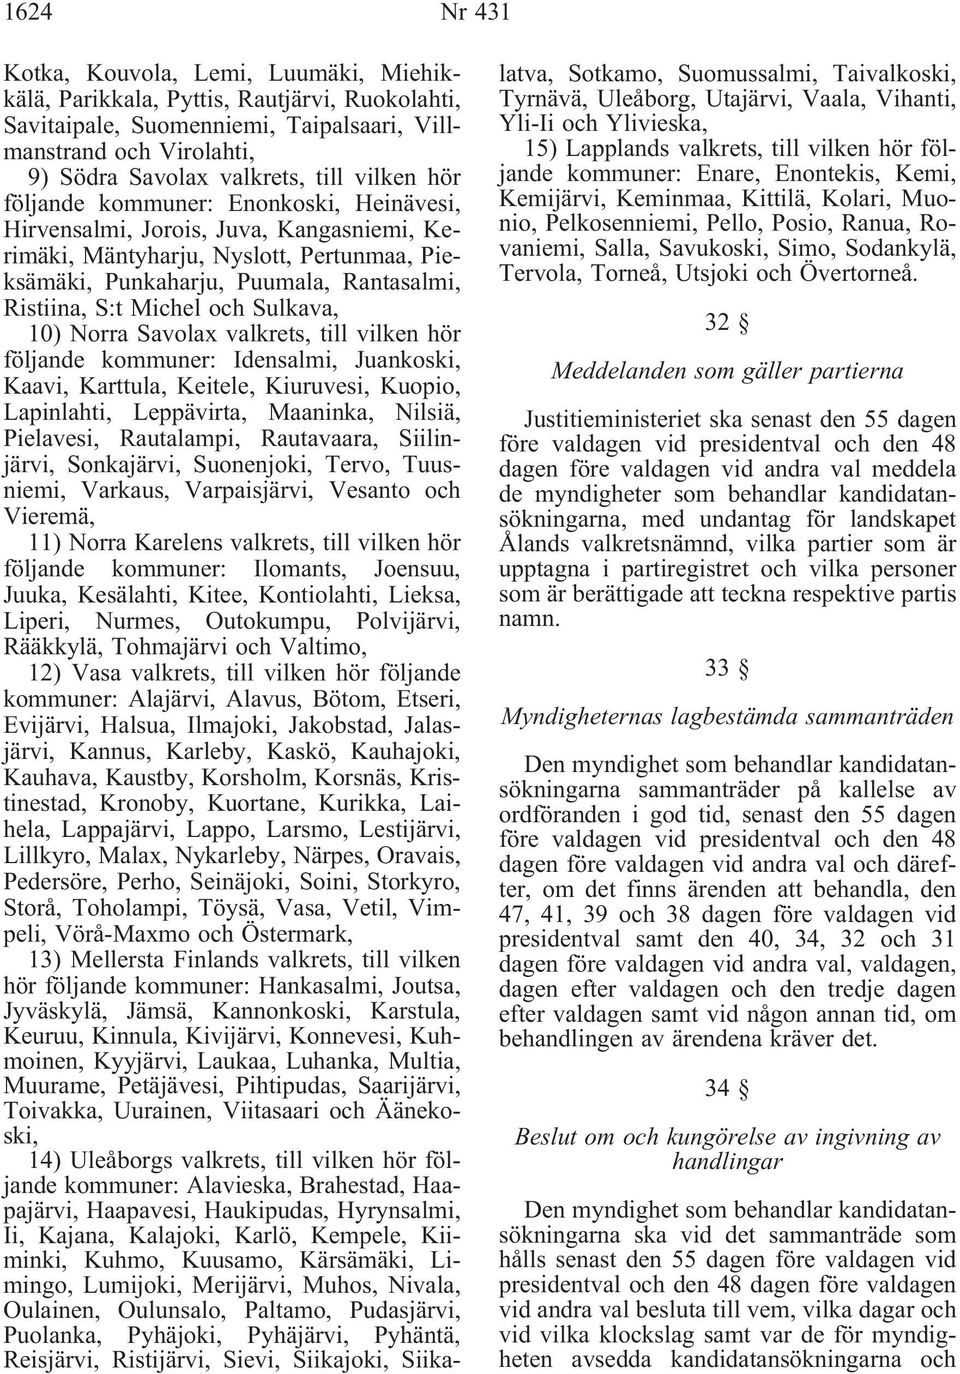 och Sulkava, 10) Norra Savolax valkrets, till vilken hör följande kommuner: Idensalmi, Juankoski, Kaavi, Karttula, Keitele, Kiuruvesi, Kuopio, Lapinlahti, Leppävirta, Maaninka, Nilsiä, Pielavesi,